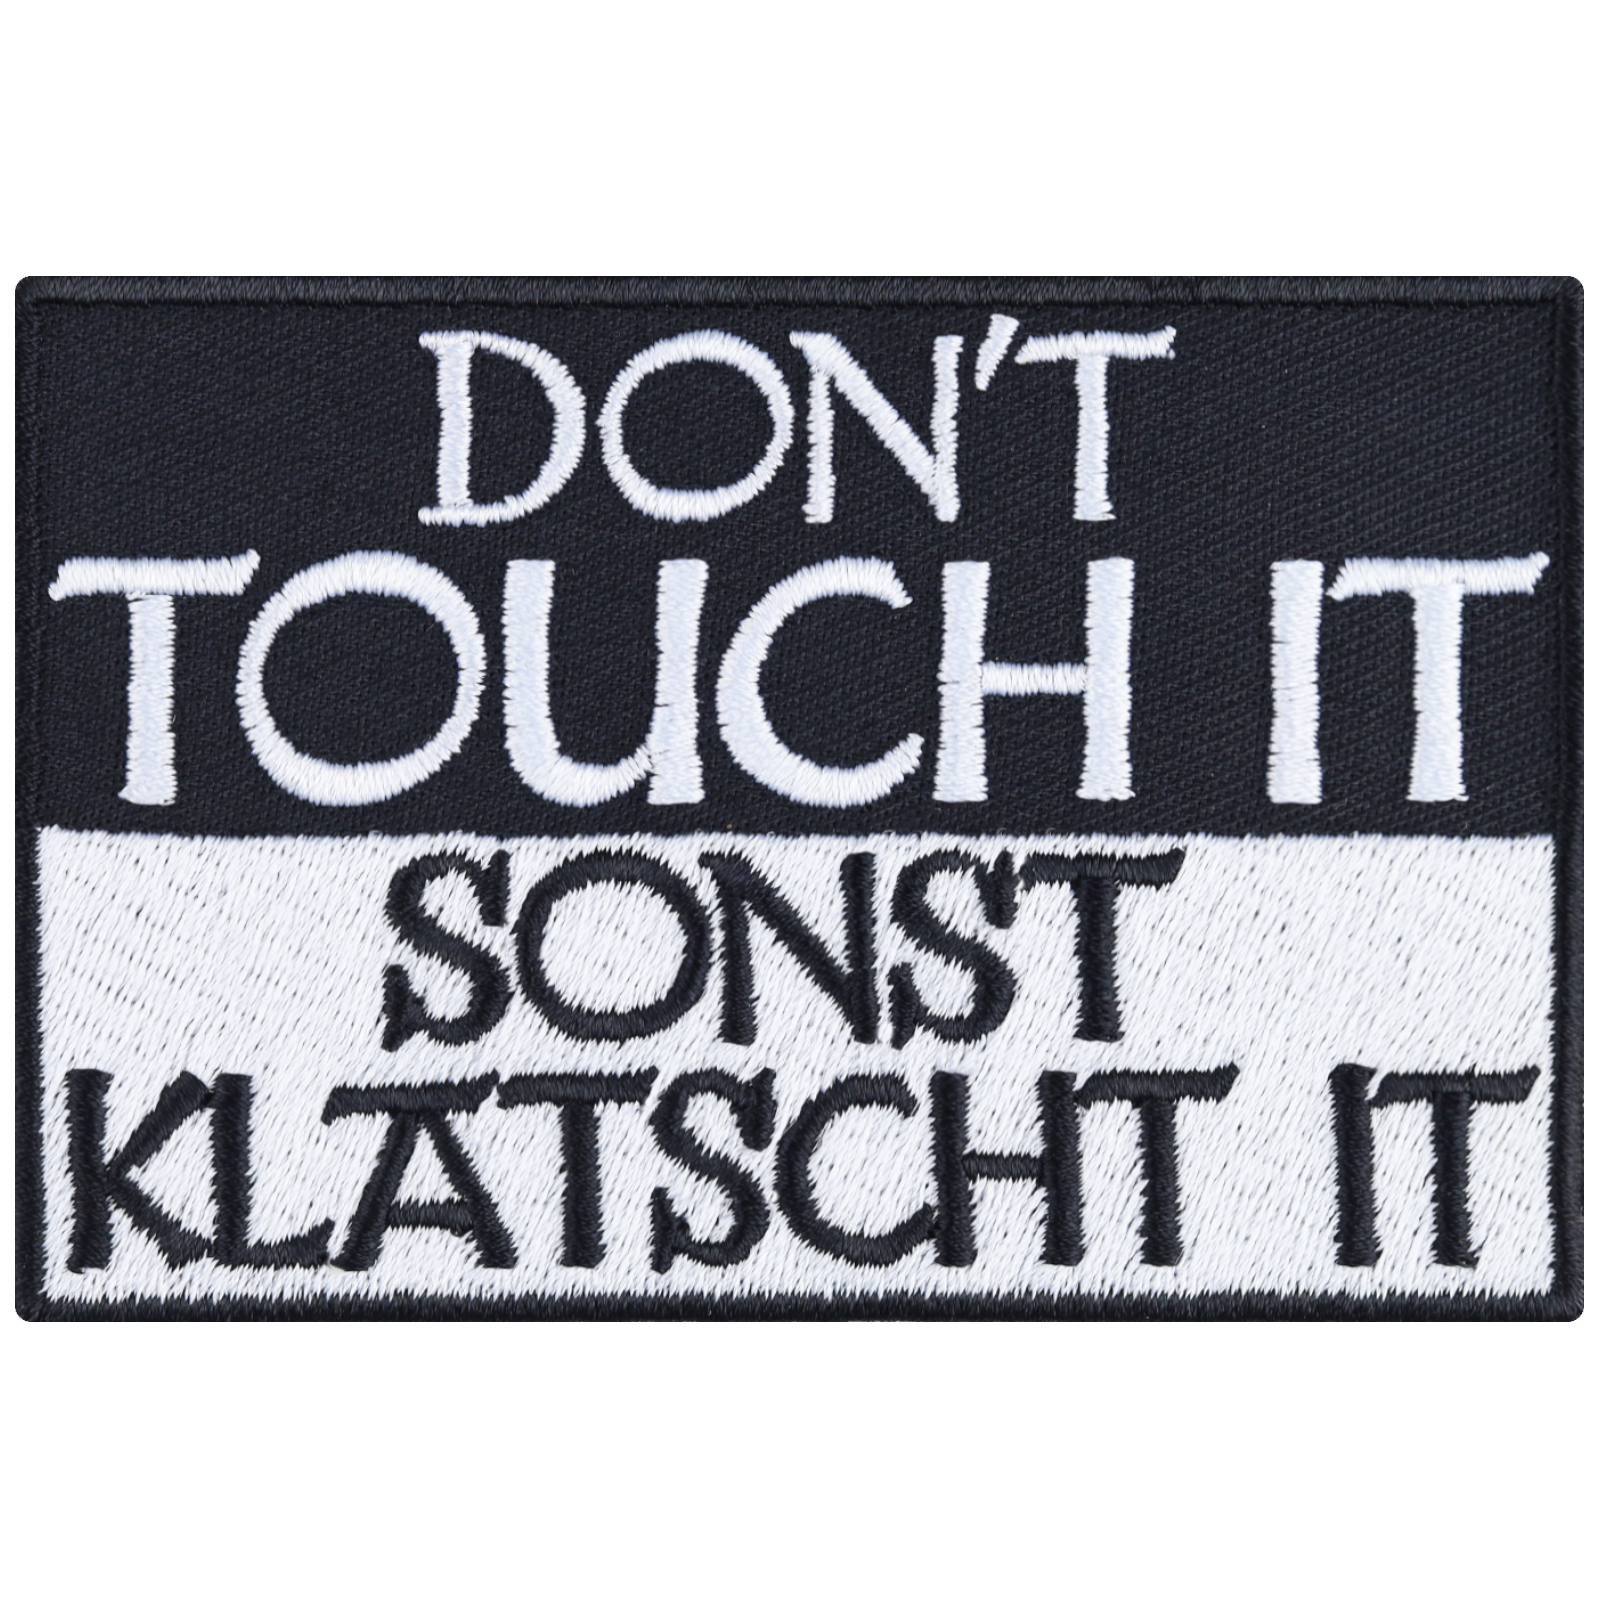 Don't touch it! Sonst klatsch it! - Patch